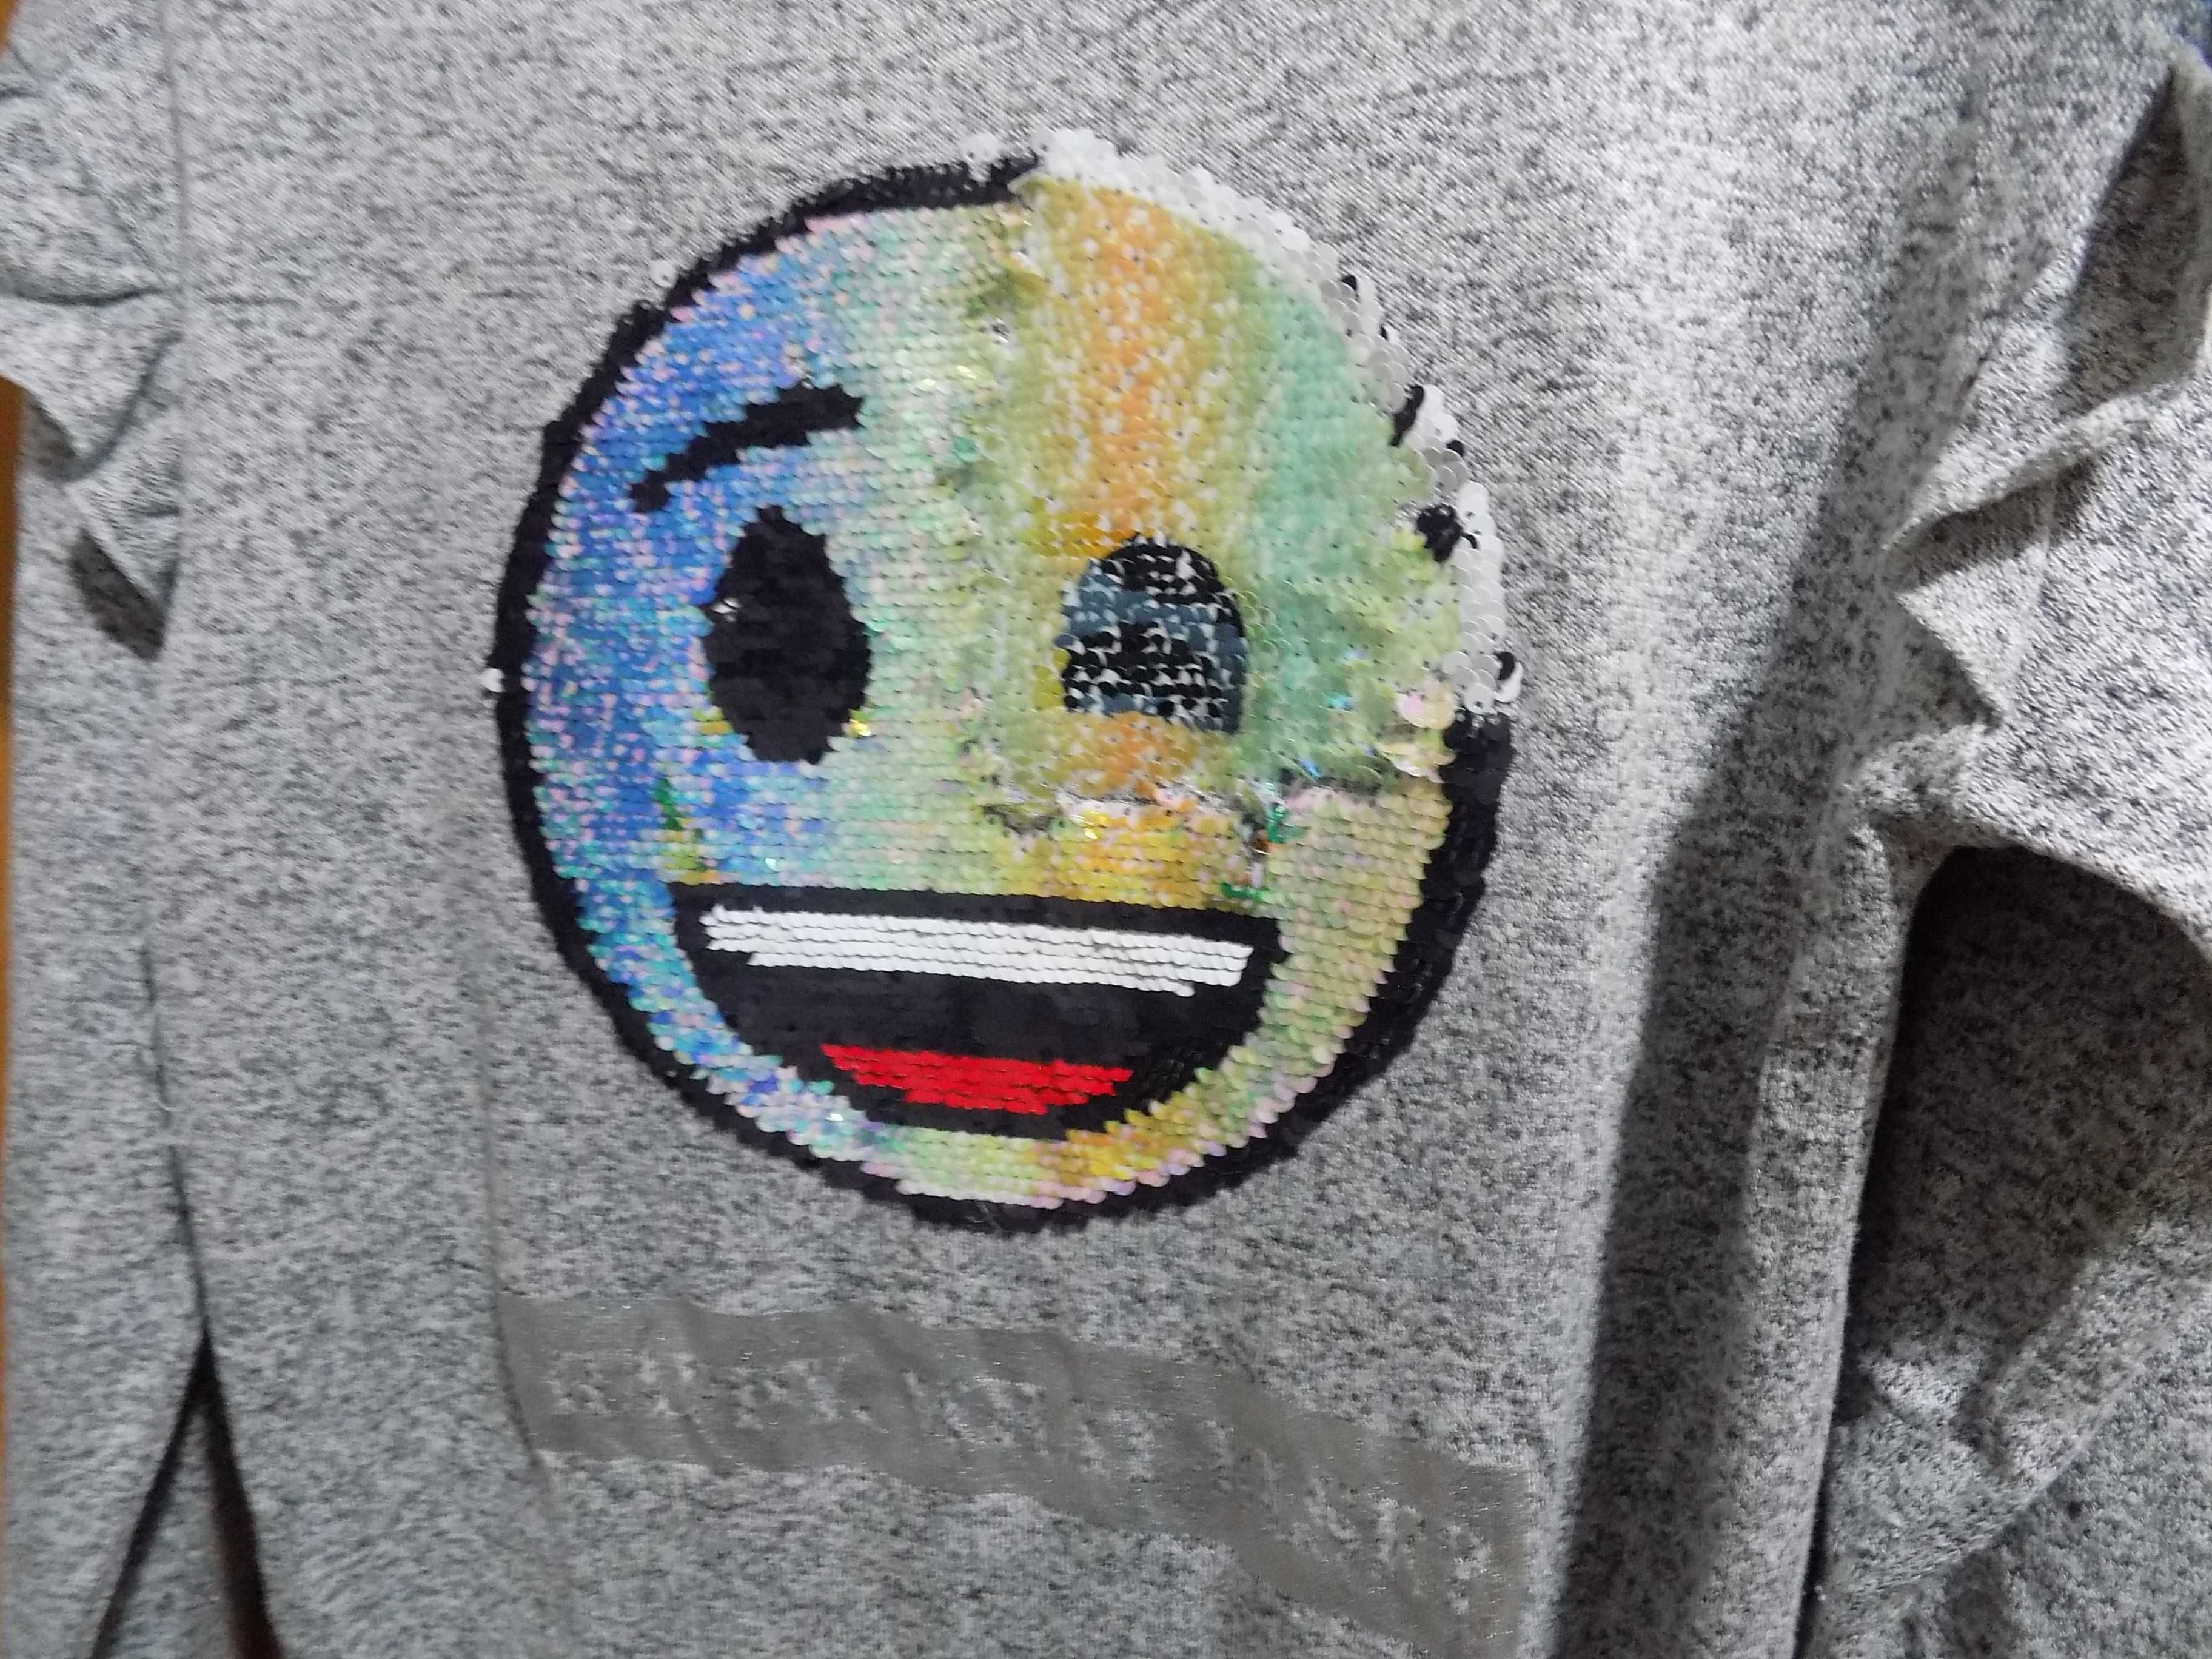 Popielaty sweterek Emoji CA